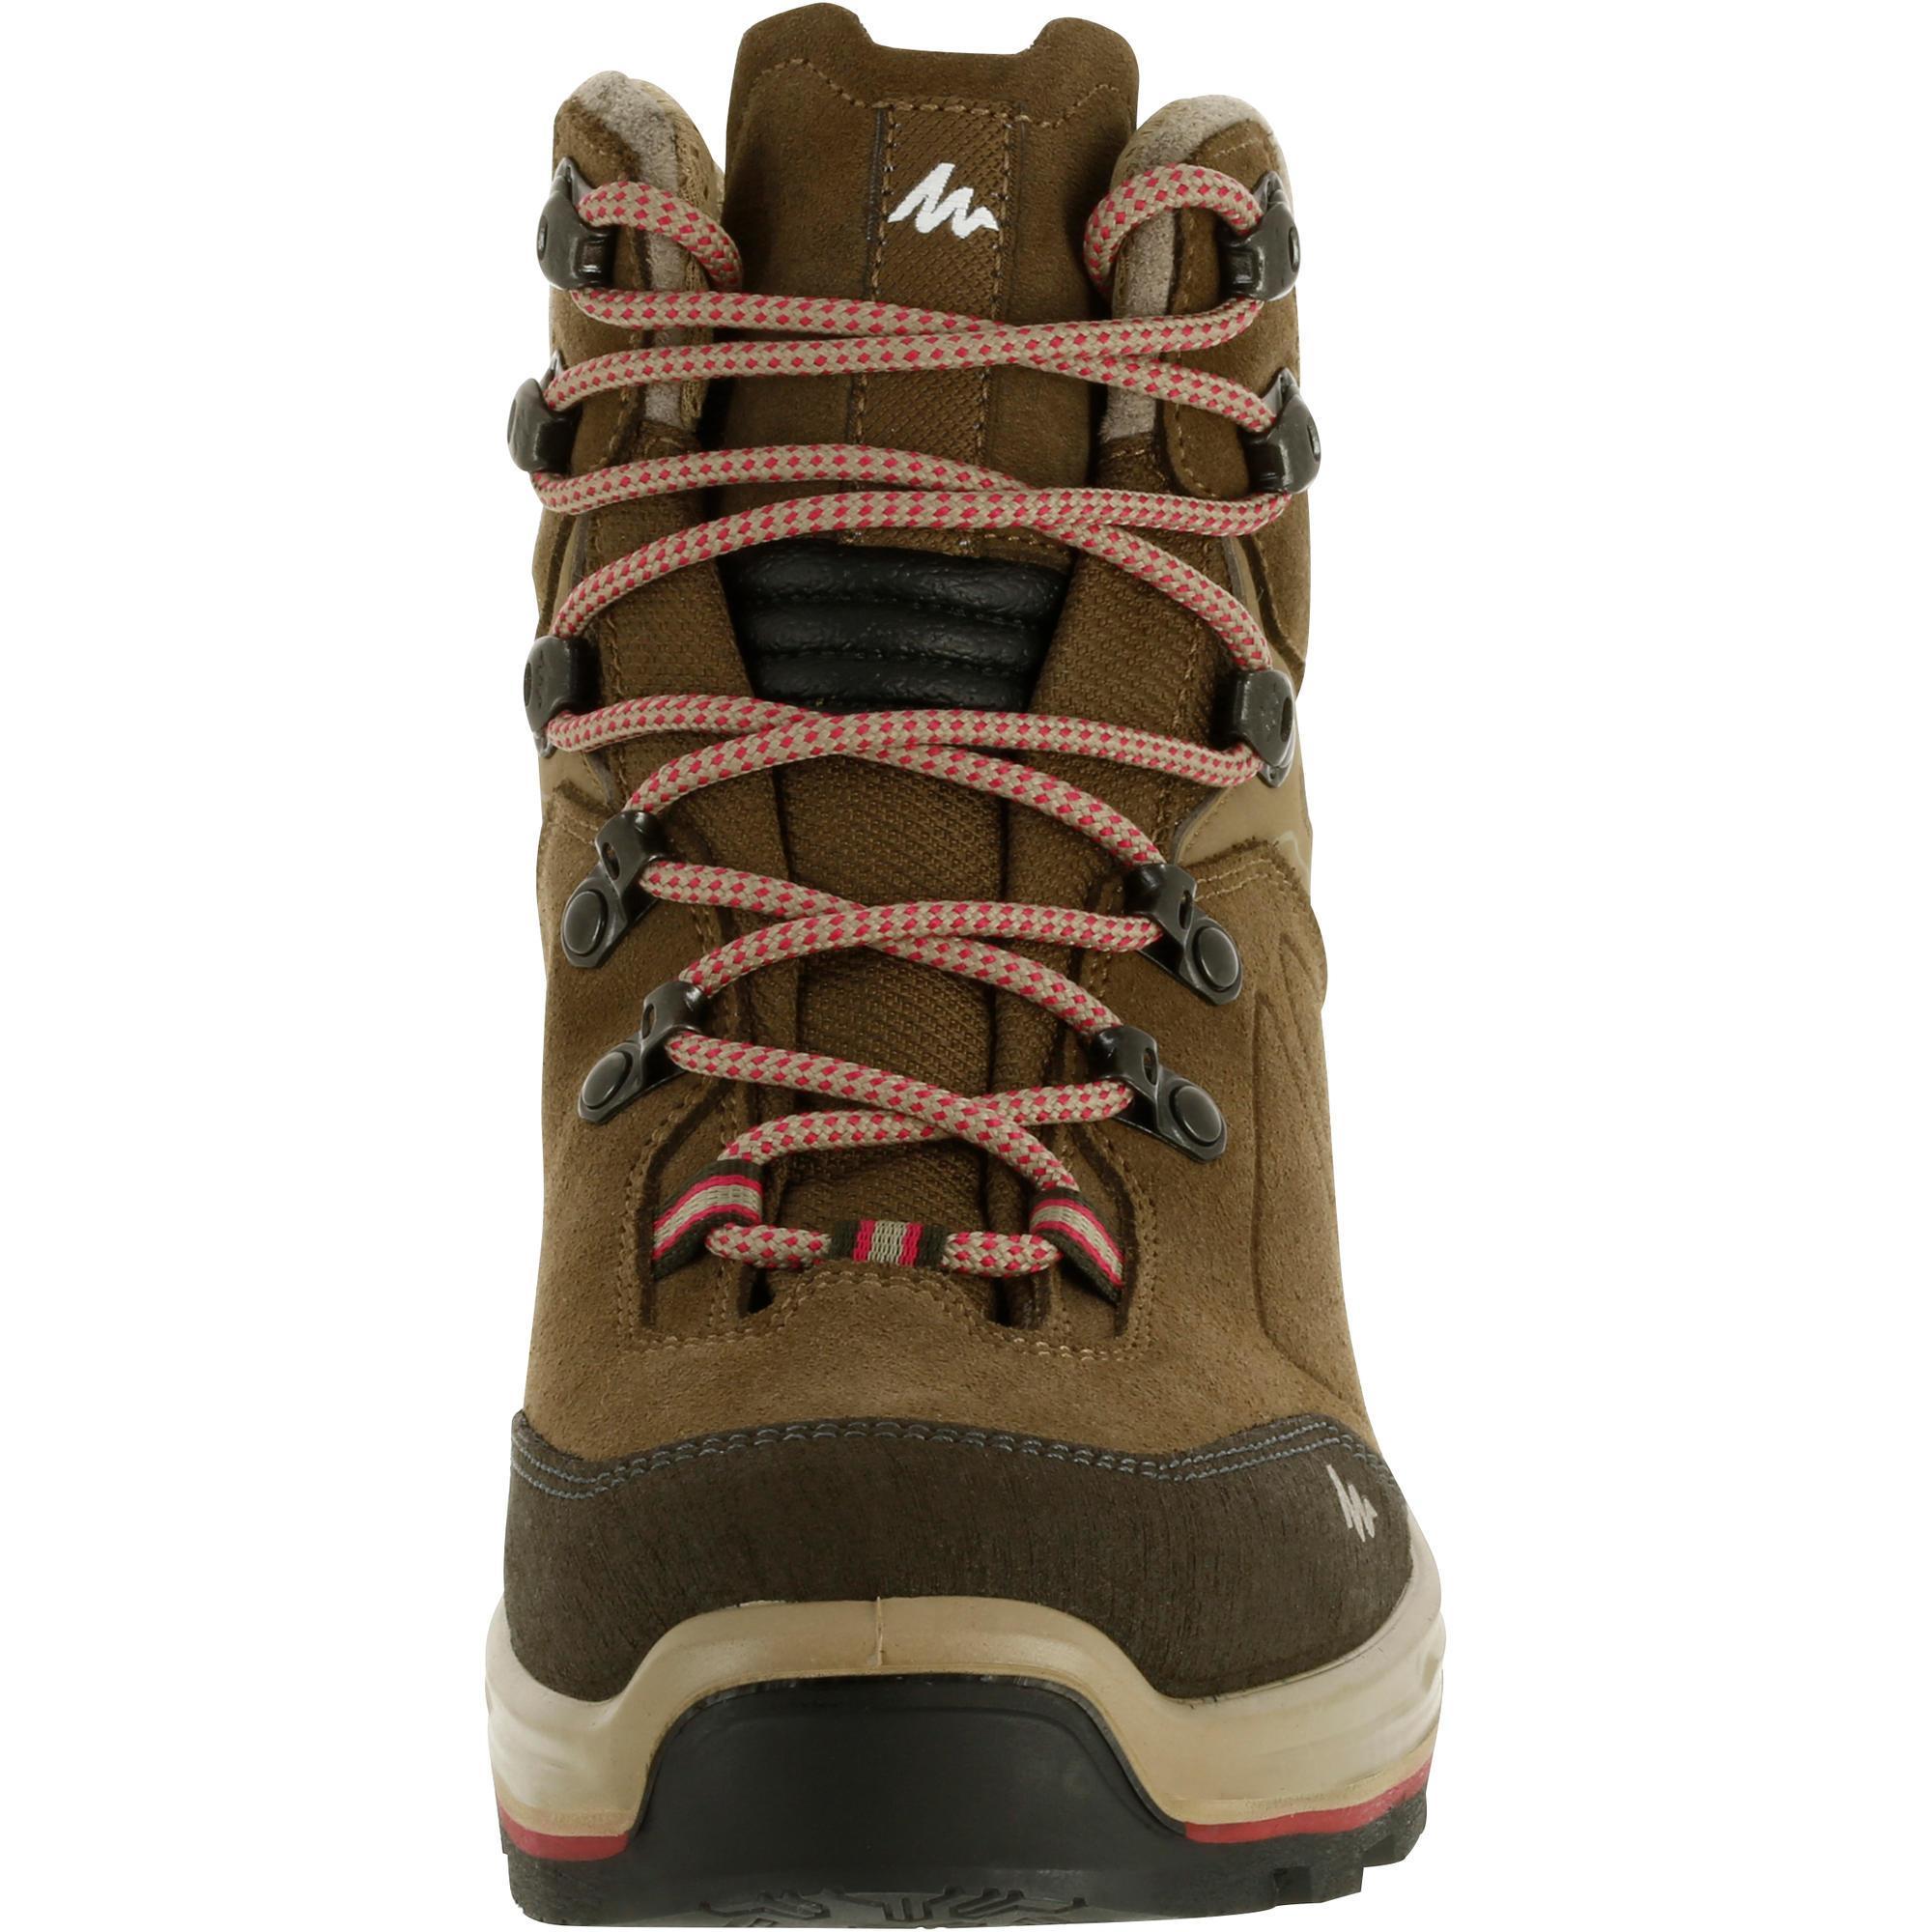 women's mountain hiking boots